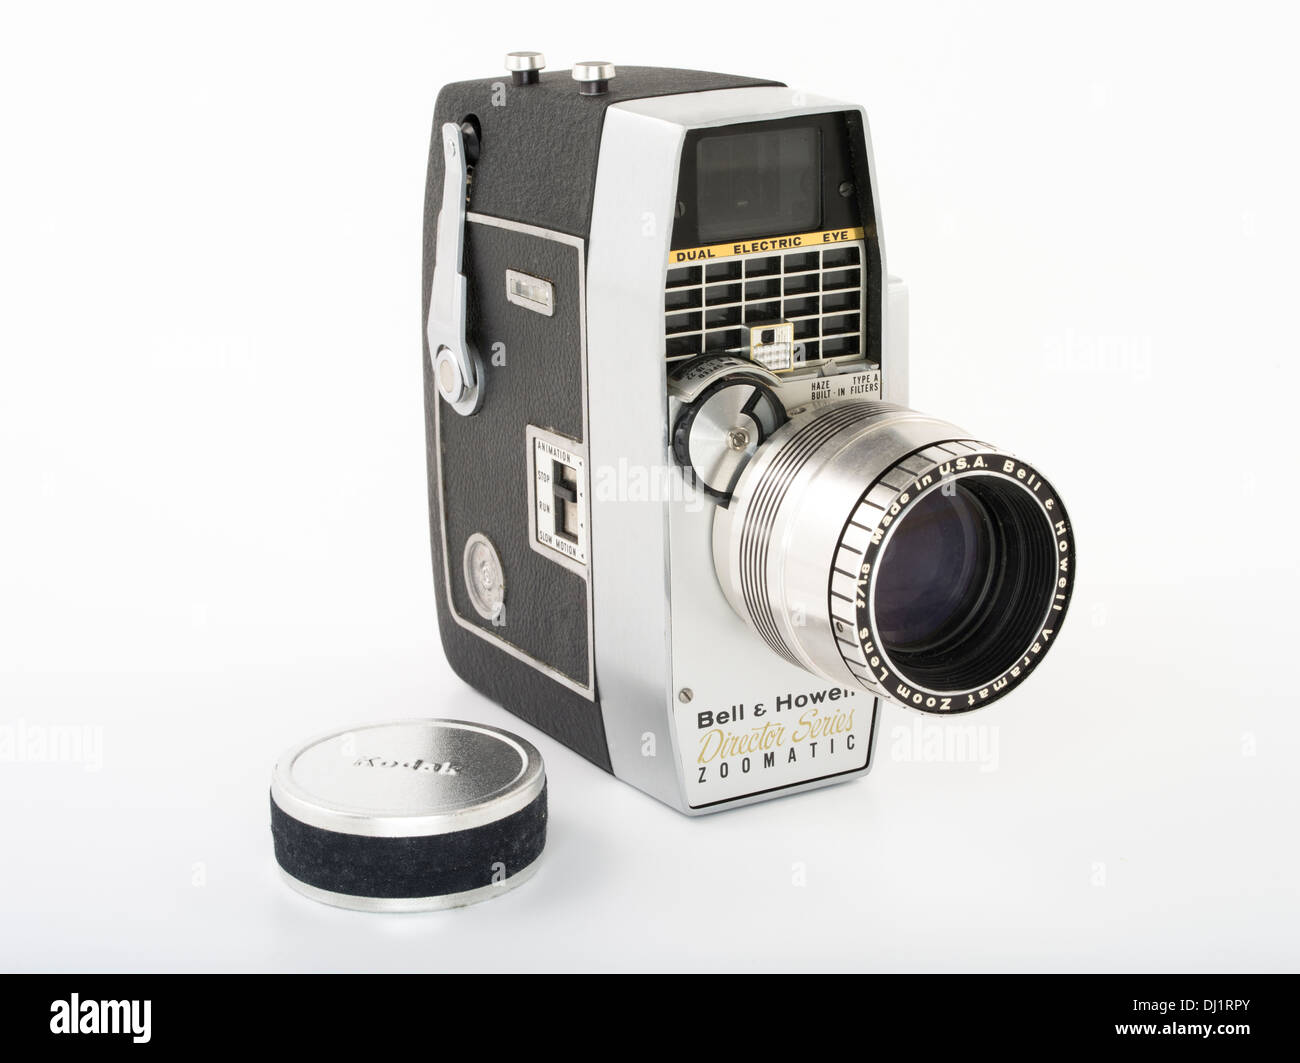 Bell & Howell Modell 414PD Director Series Zoomatic 8 mm Film Kamera ähnliches Modell, das in ZAPRUDER Film verwendet wurde Ermordung von JFK Stockfoto